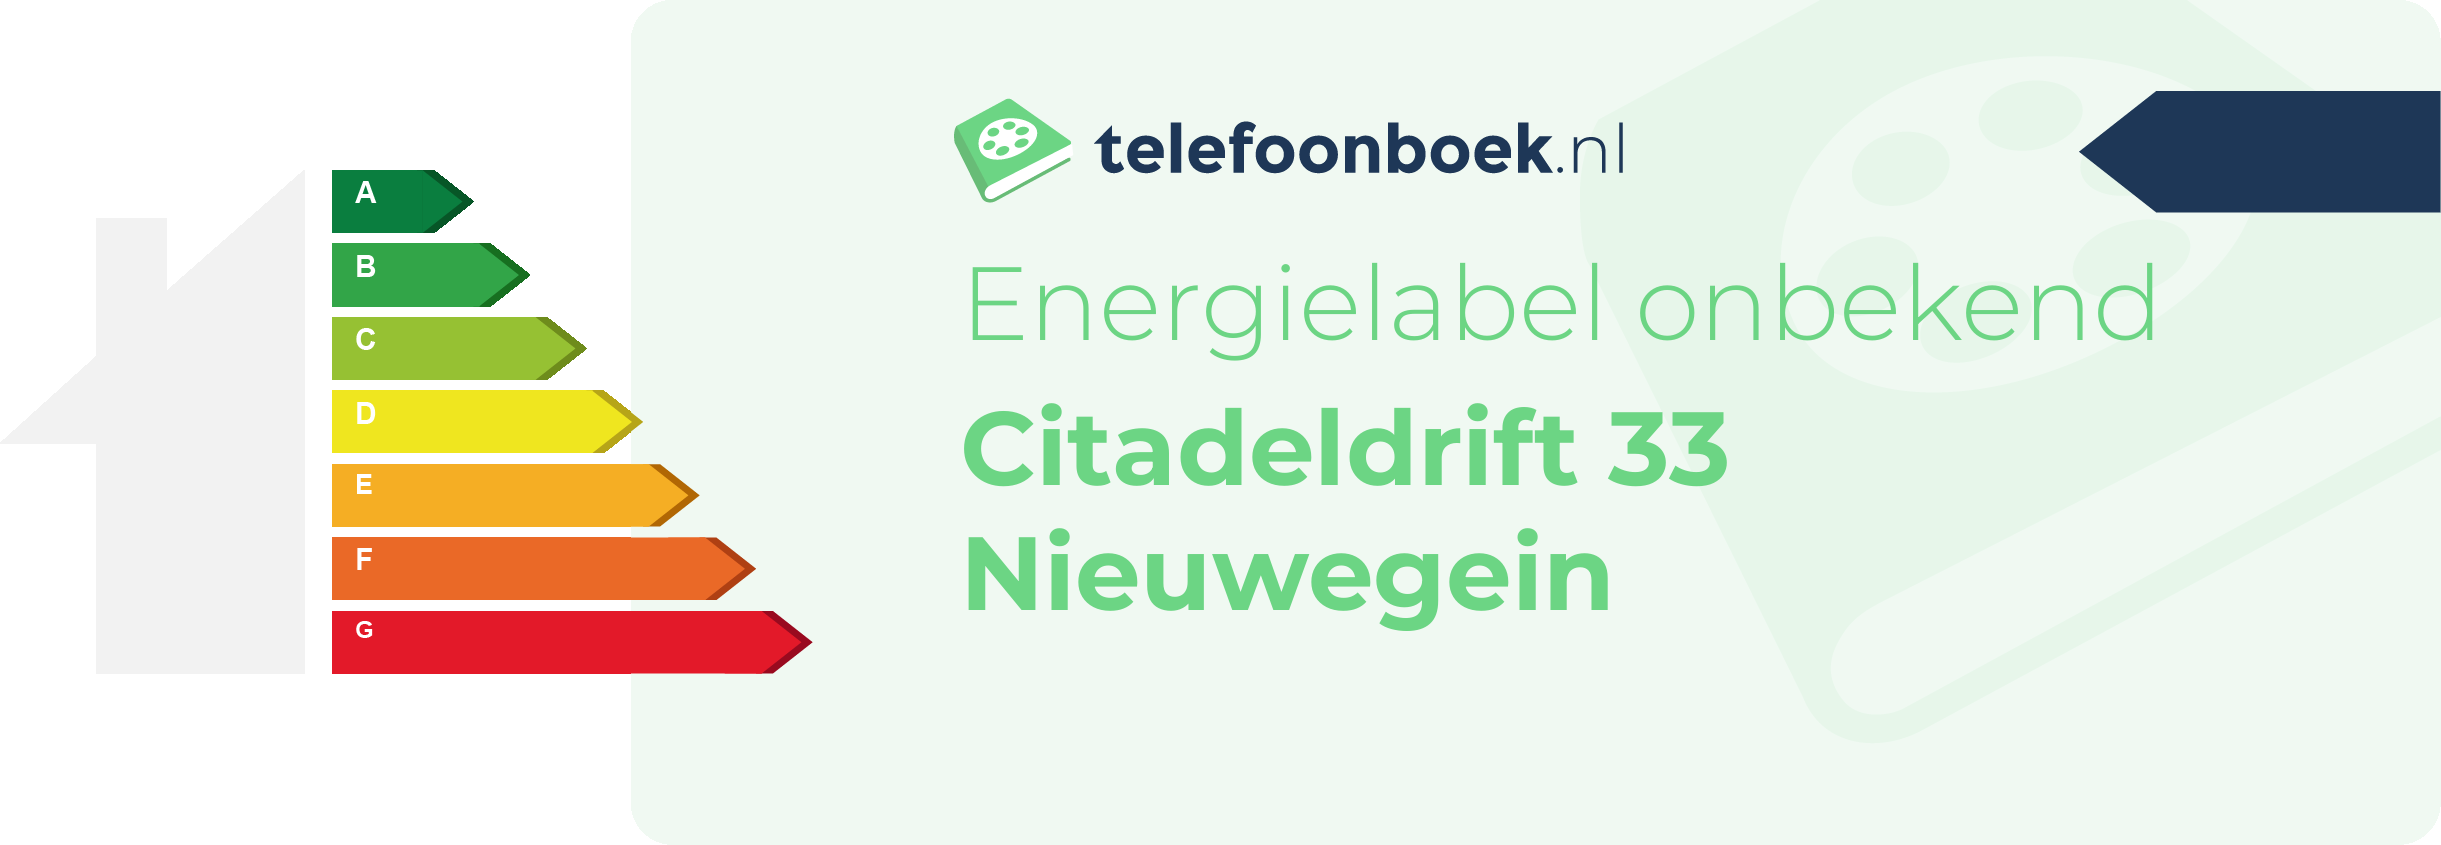 Energielabel Citadeldrift 33 Nieuwegein